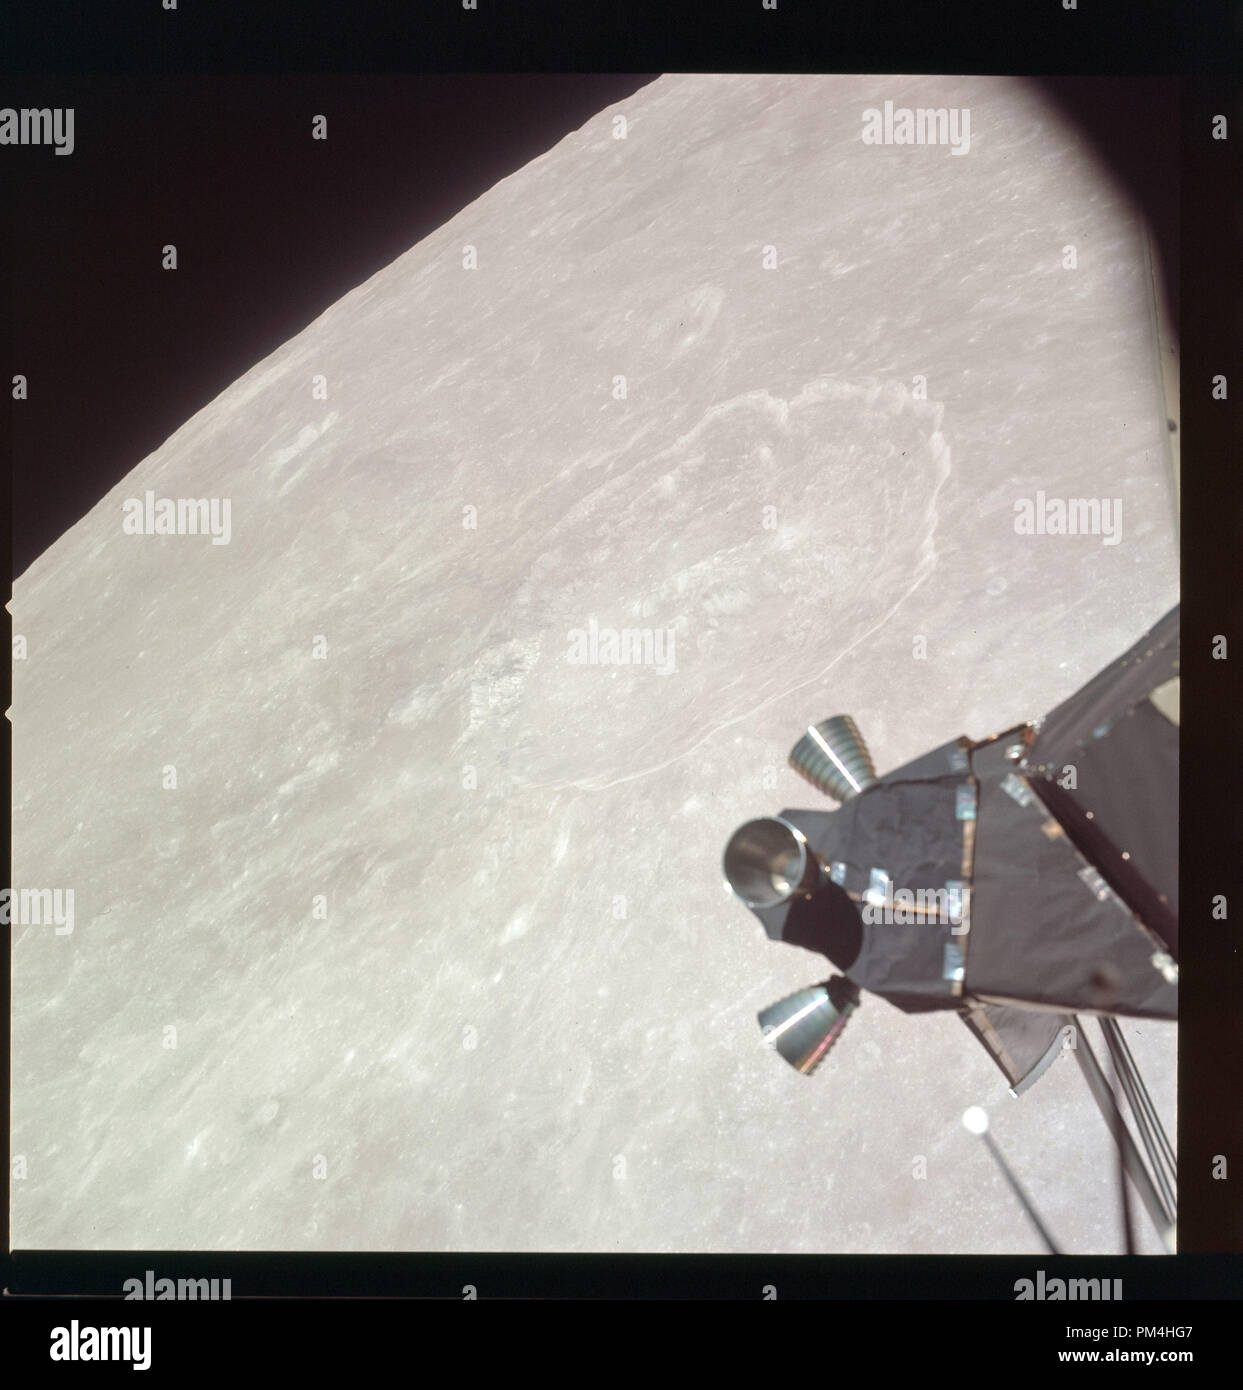 Apollo 11 Auf dem Mond während der Juli 1969 Geschichte Die Reise auf den Mond und die anschließende Mondlandung. Datei Referenz Nr. 1003 323 THA Stockfoto